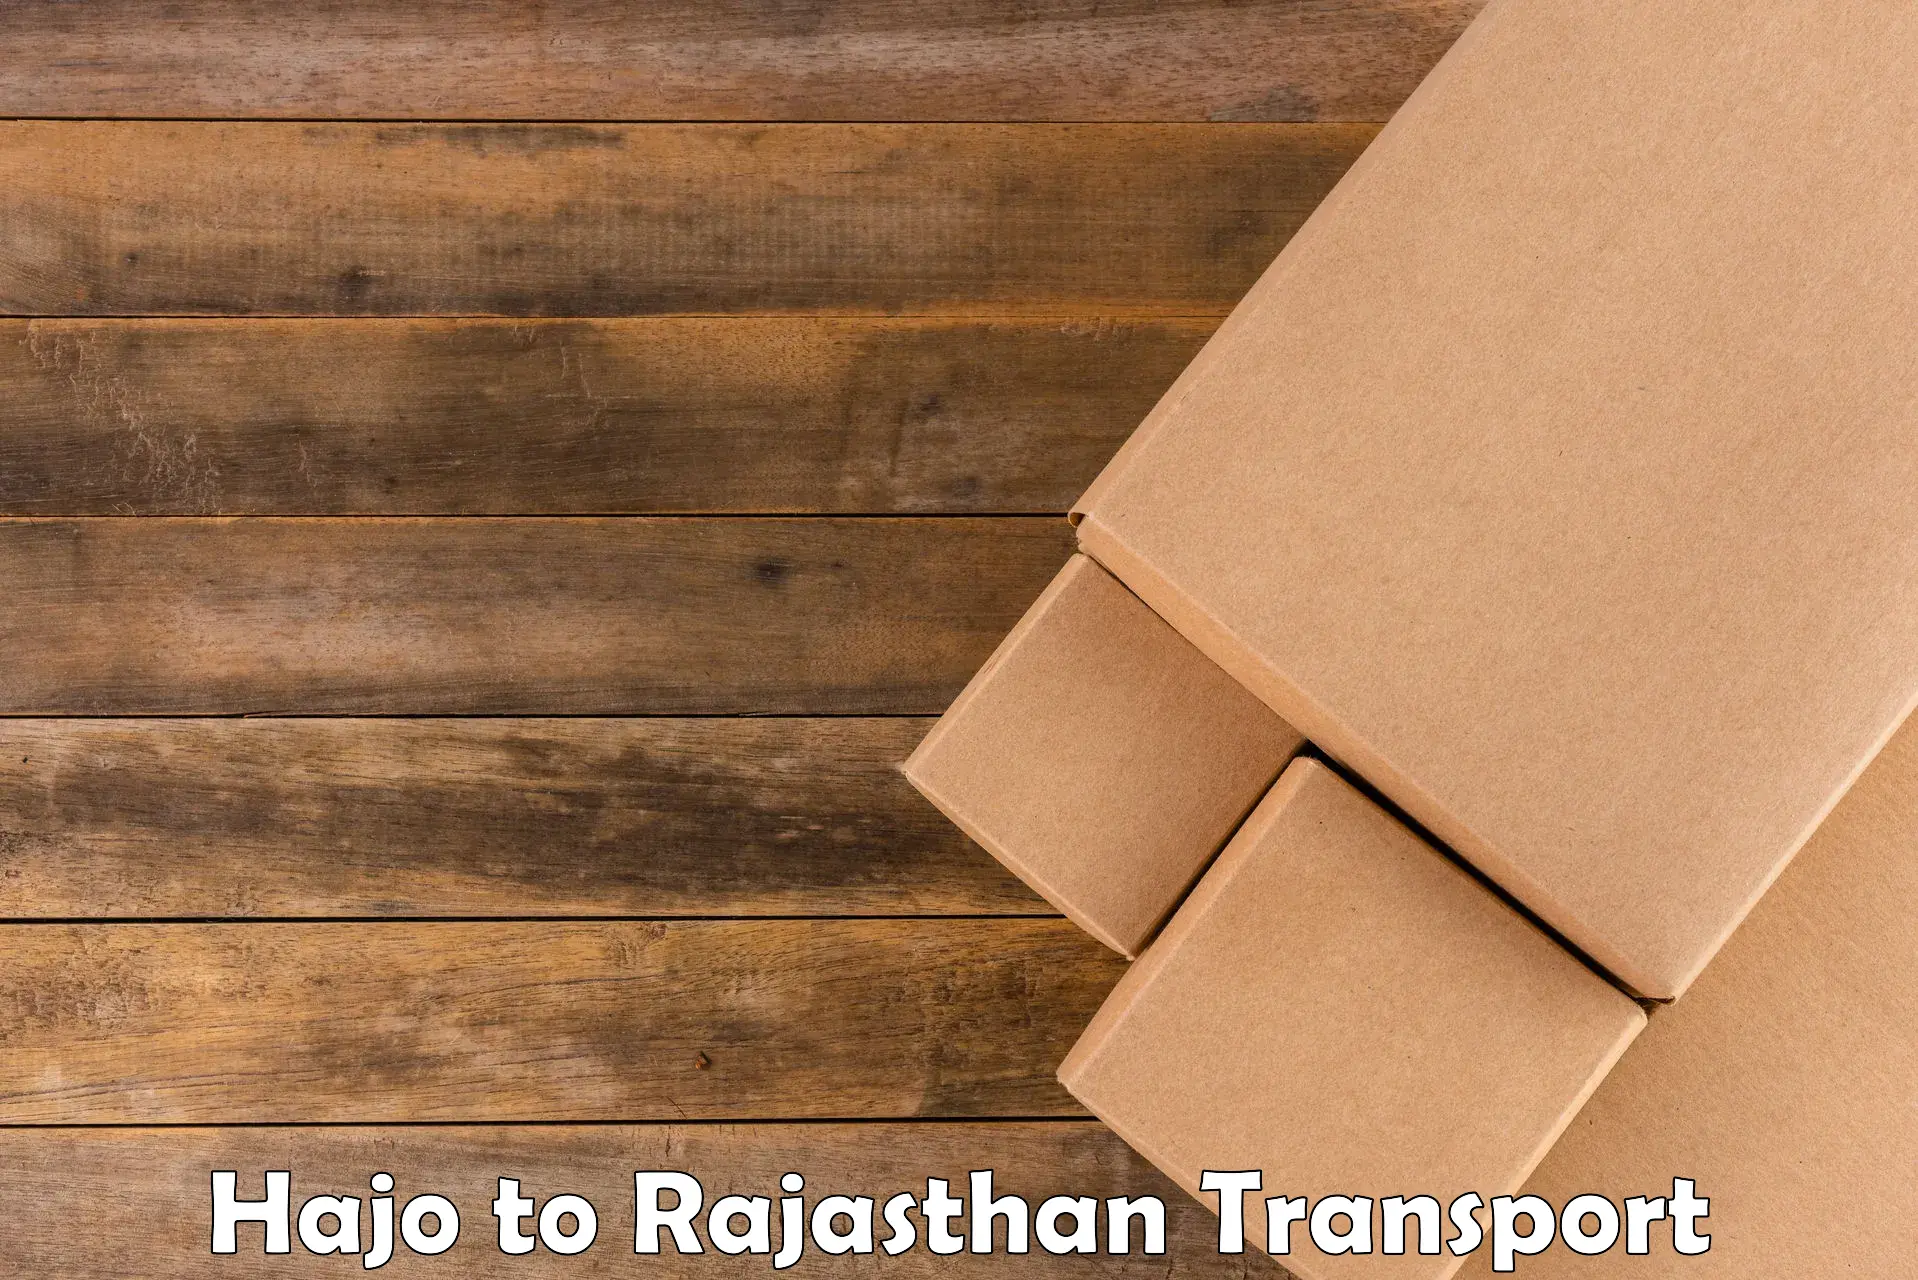 Furniture transport service Hajo to Srimadhopur